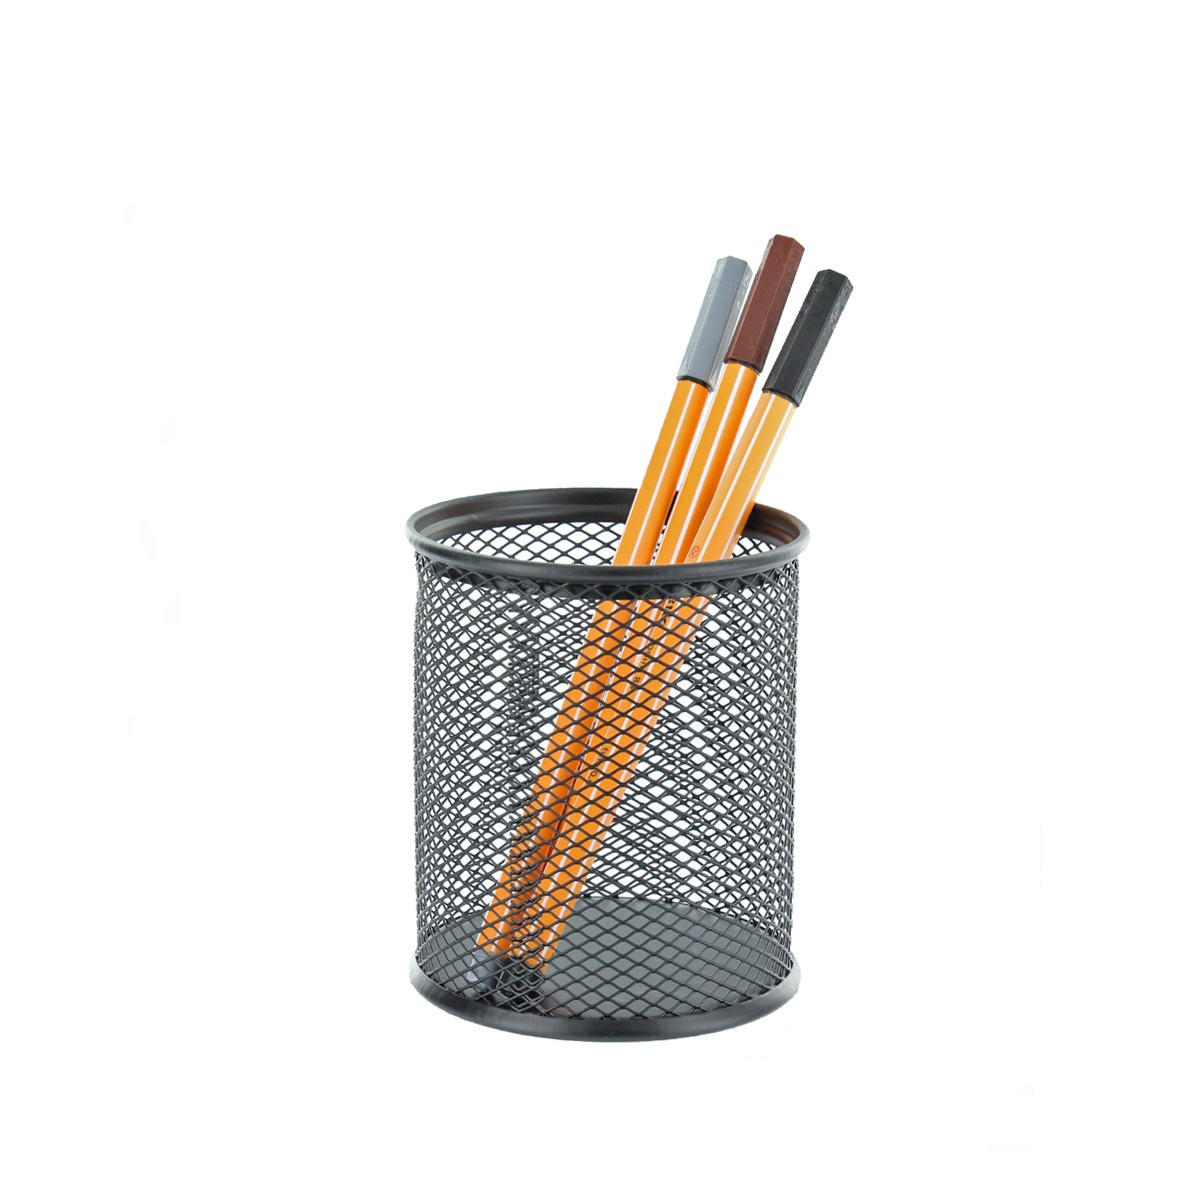 31 pot a crayons en maille metallique noire